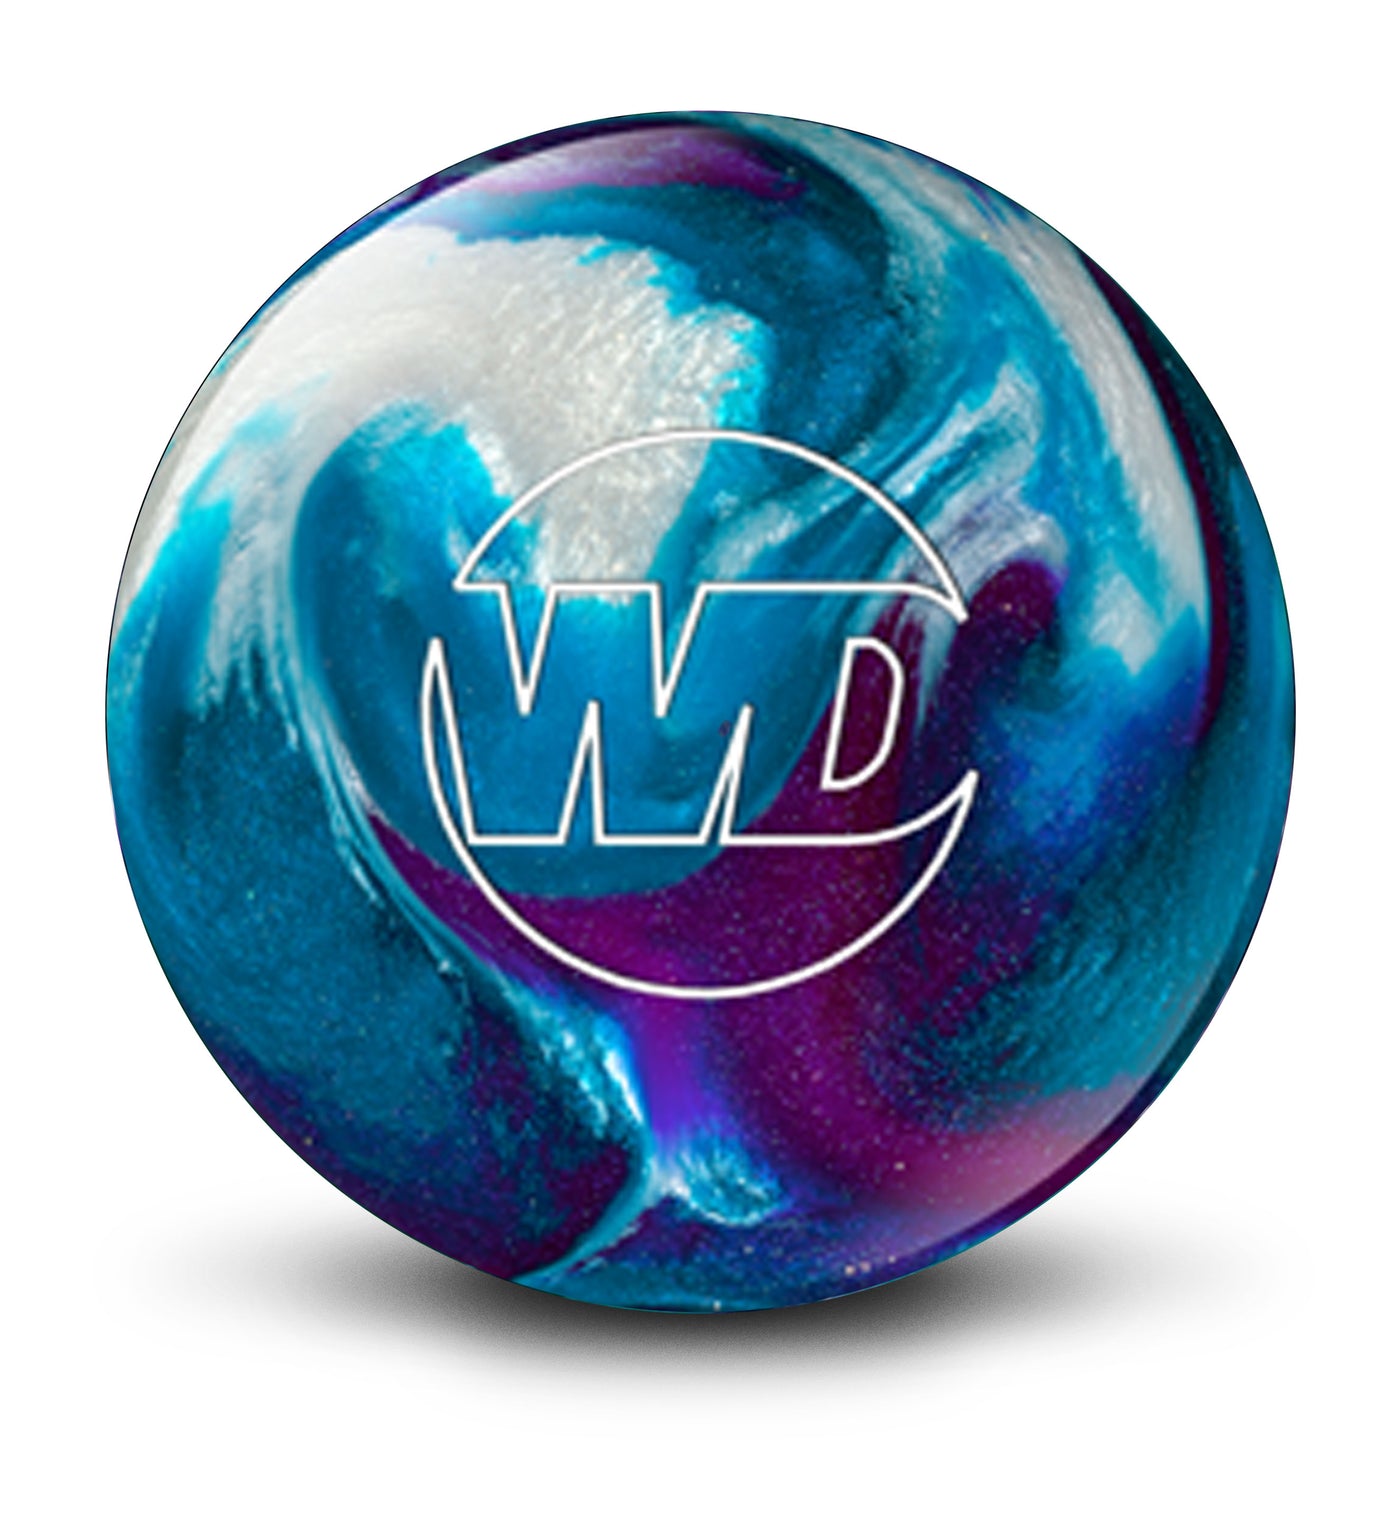 White Dot Blue/Purple/White bowling ball